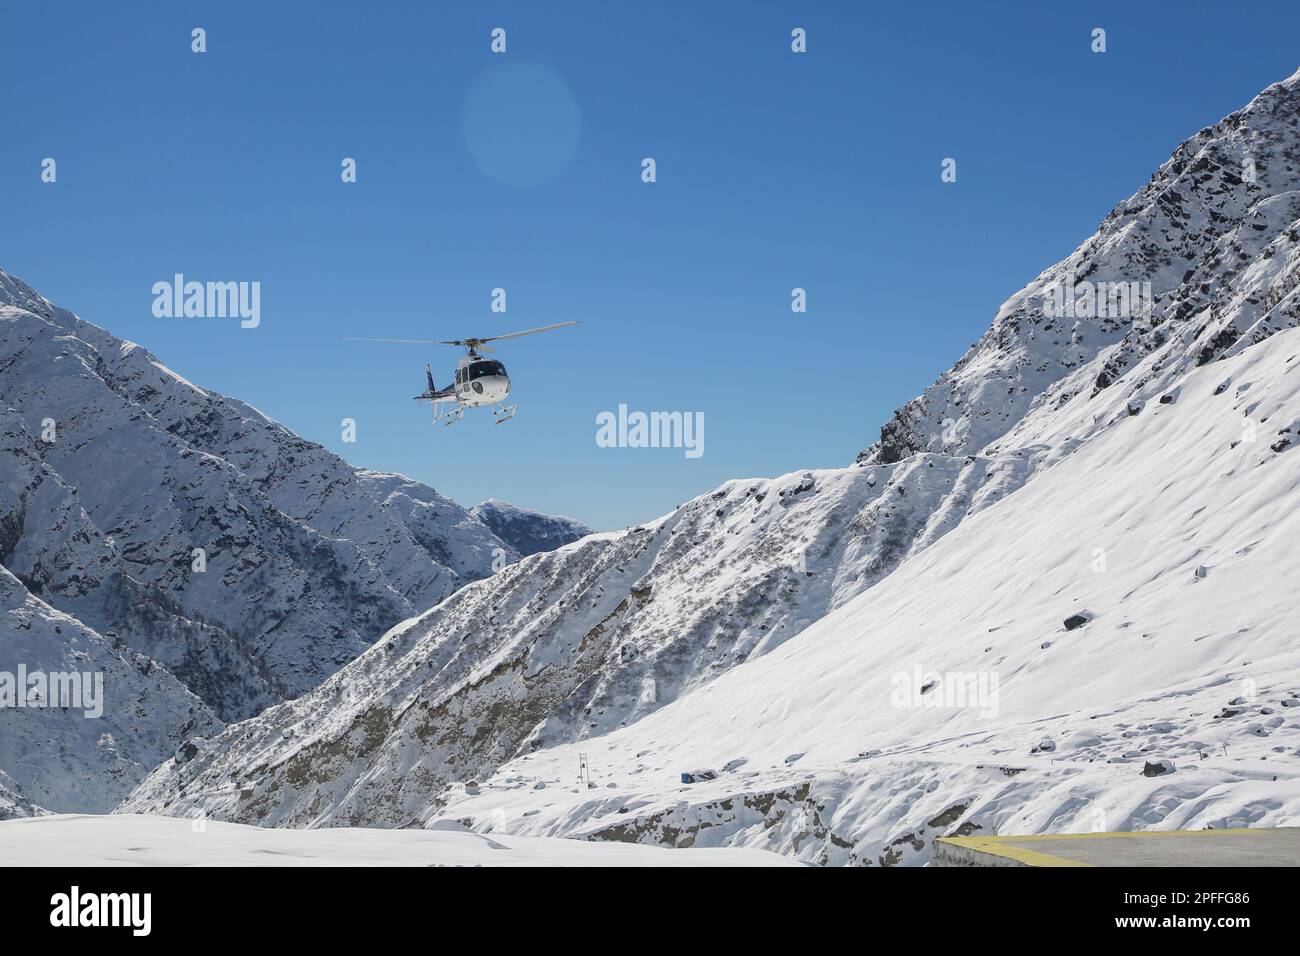 Elicottero che vola nella valle innevata della montagna in Himalaya. Elicottero bianco su un paesaggio bianco con sfondo cielo blu chiaro. Foto Stock